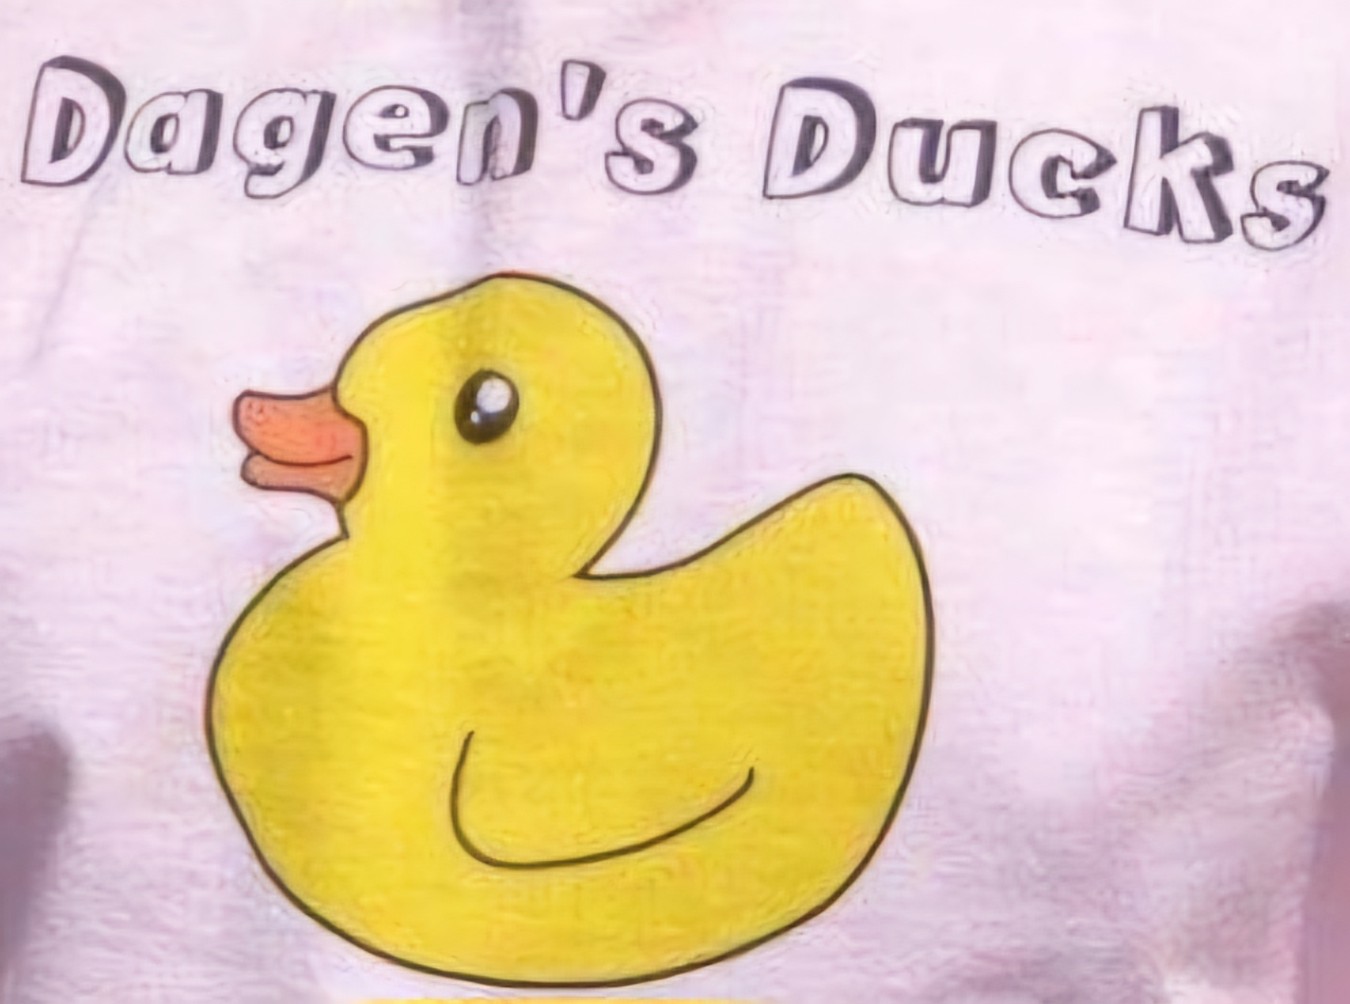 Dagen's Ducks